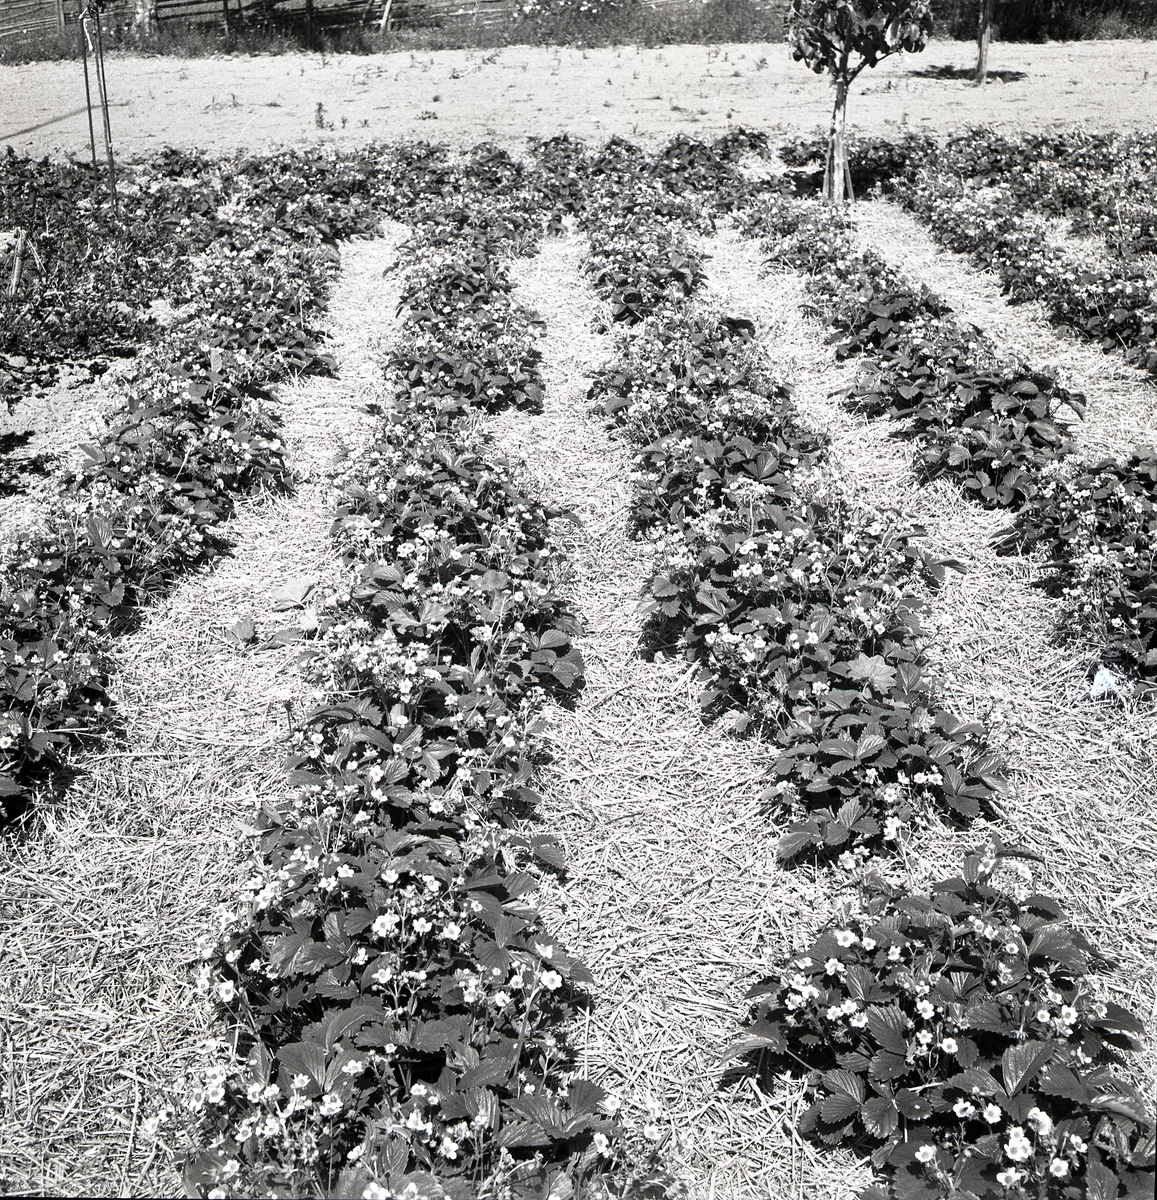 Jordgubbslandet i Sunnanåker blommar, 8 juli 1951.